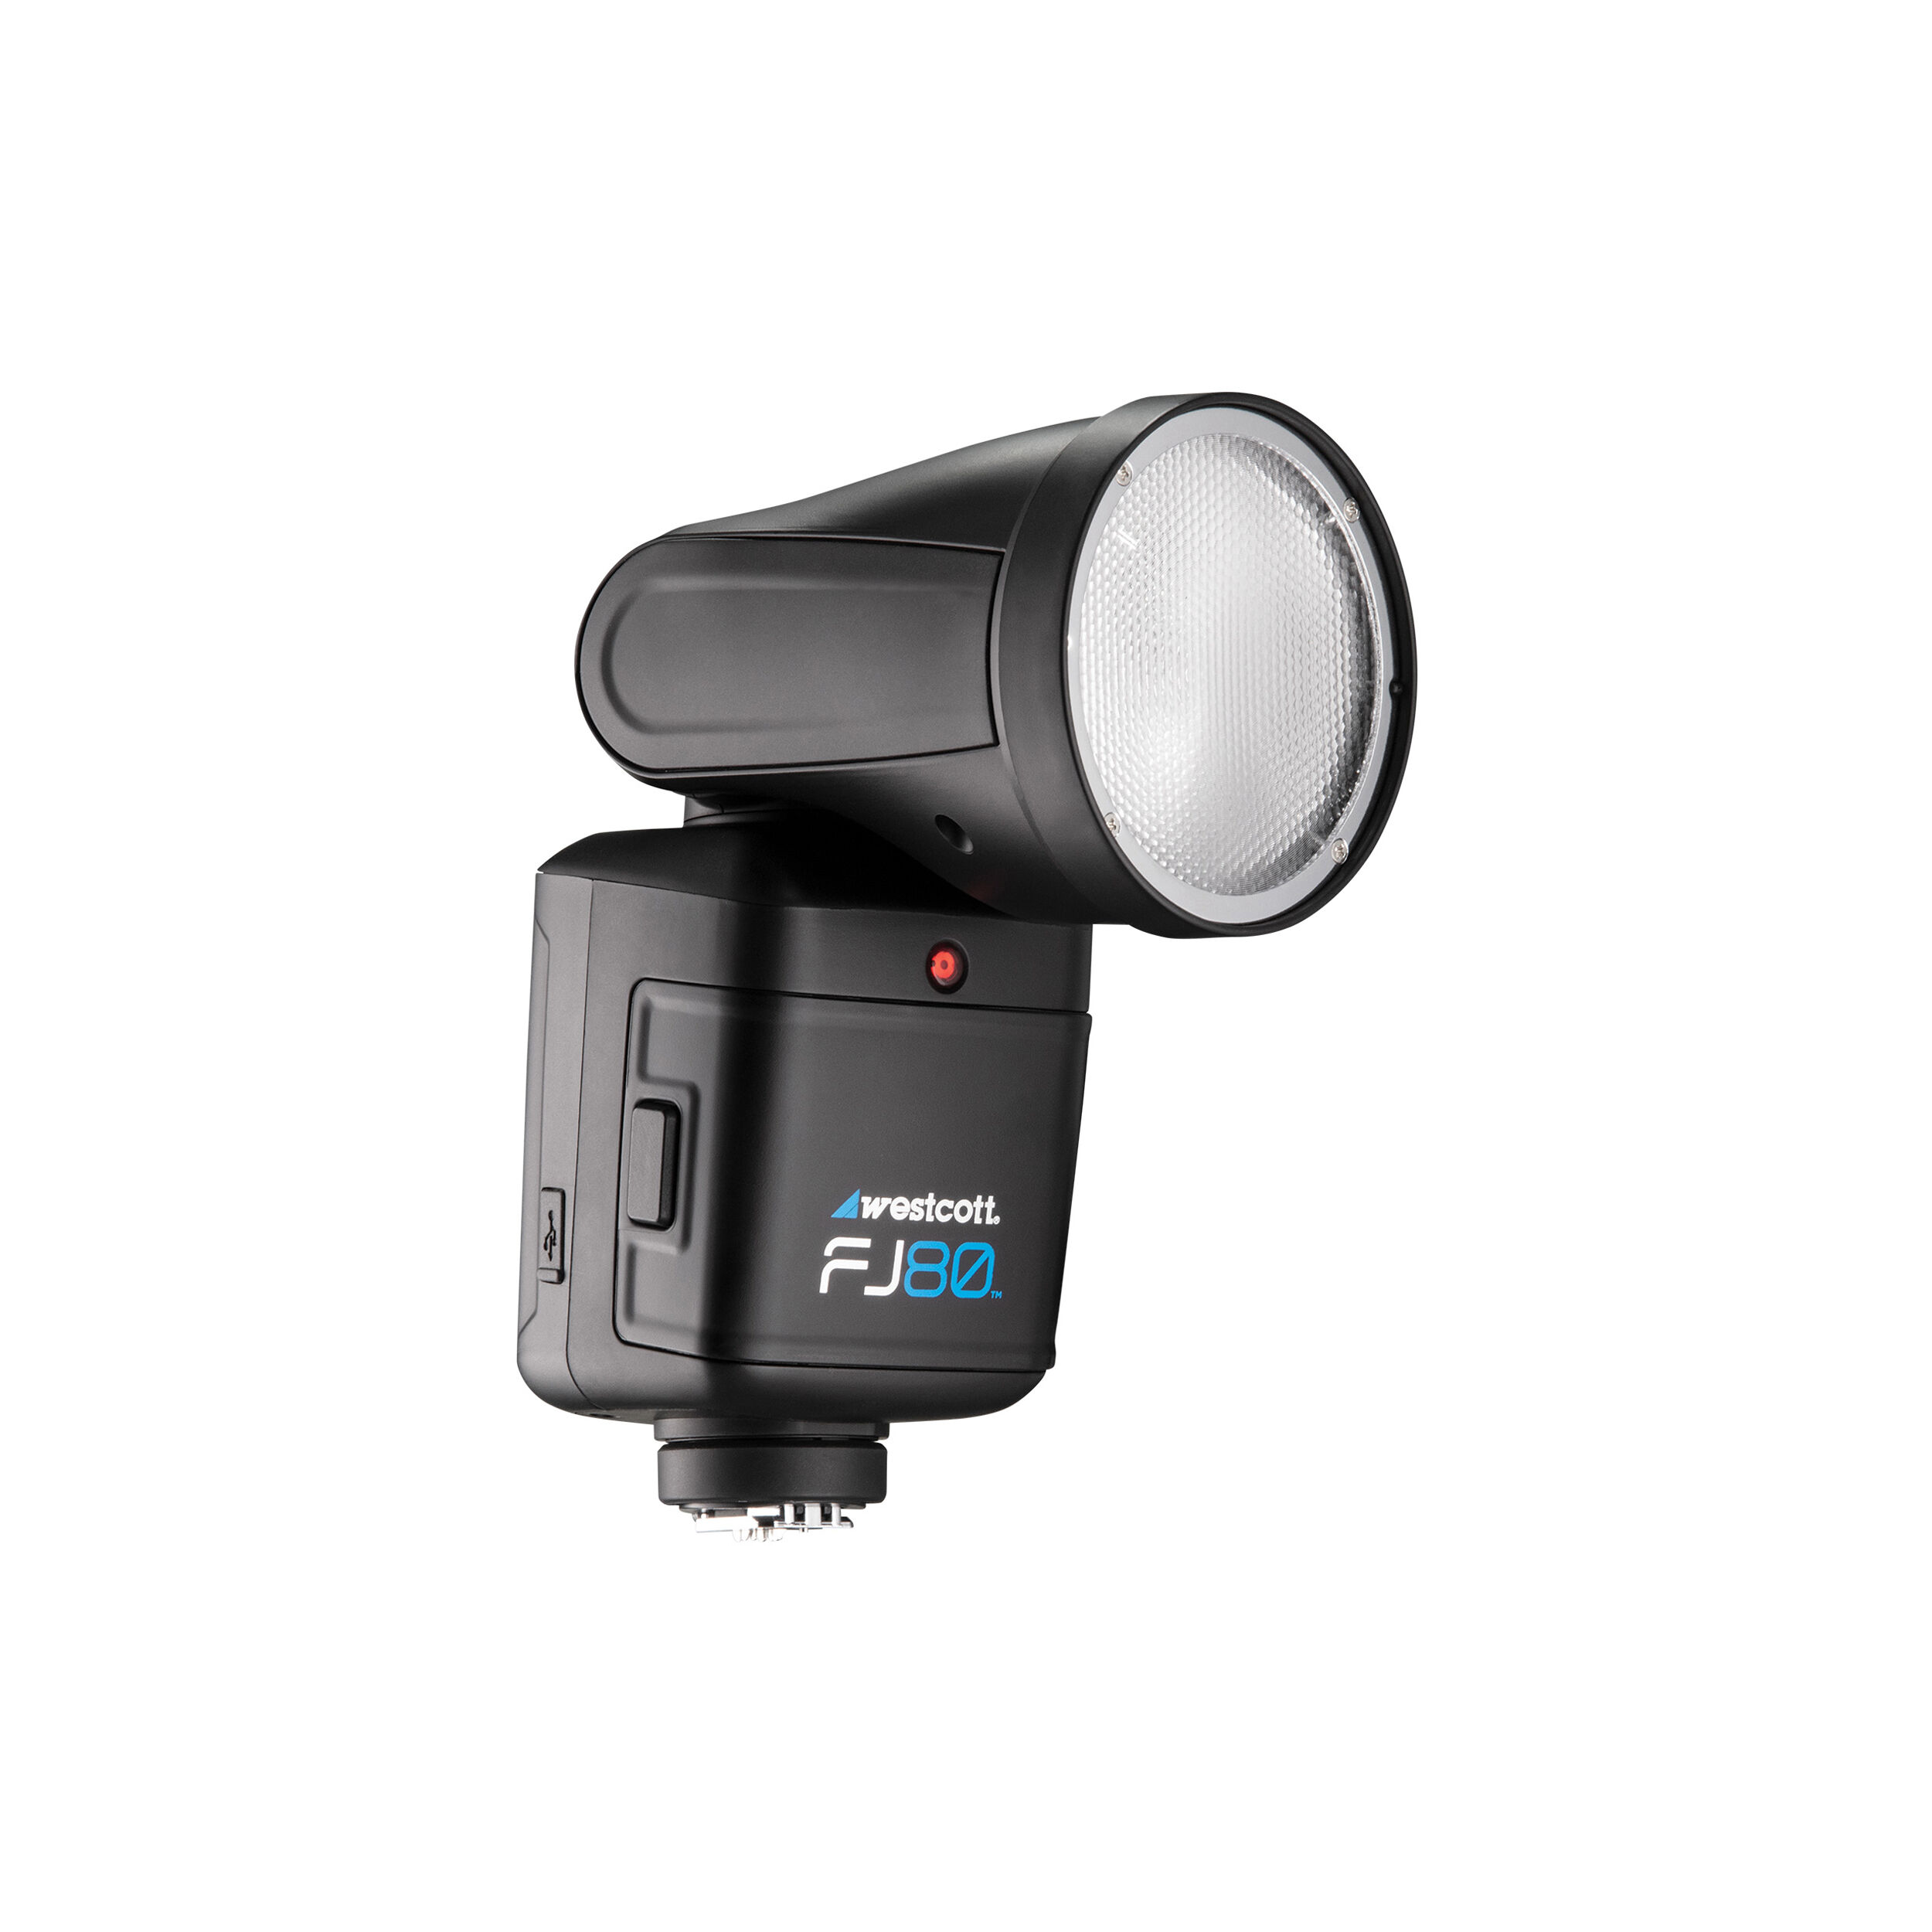 Westcott FJ80 Universal Touch Screen 80WS Speedlight avec adaptateur pour les caméras Sony